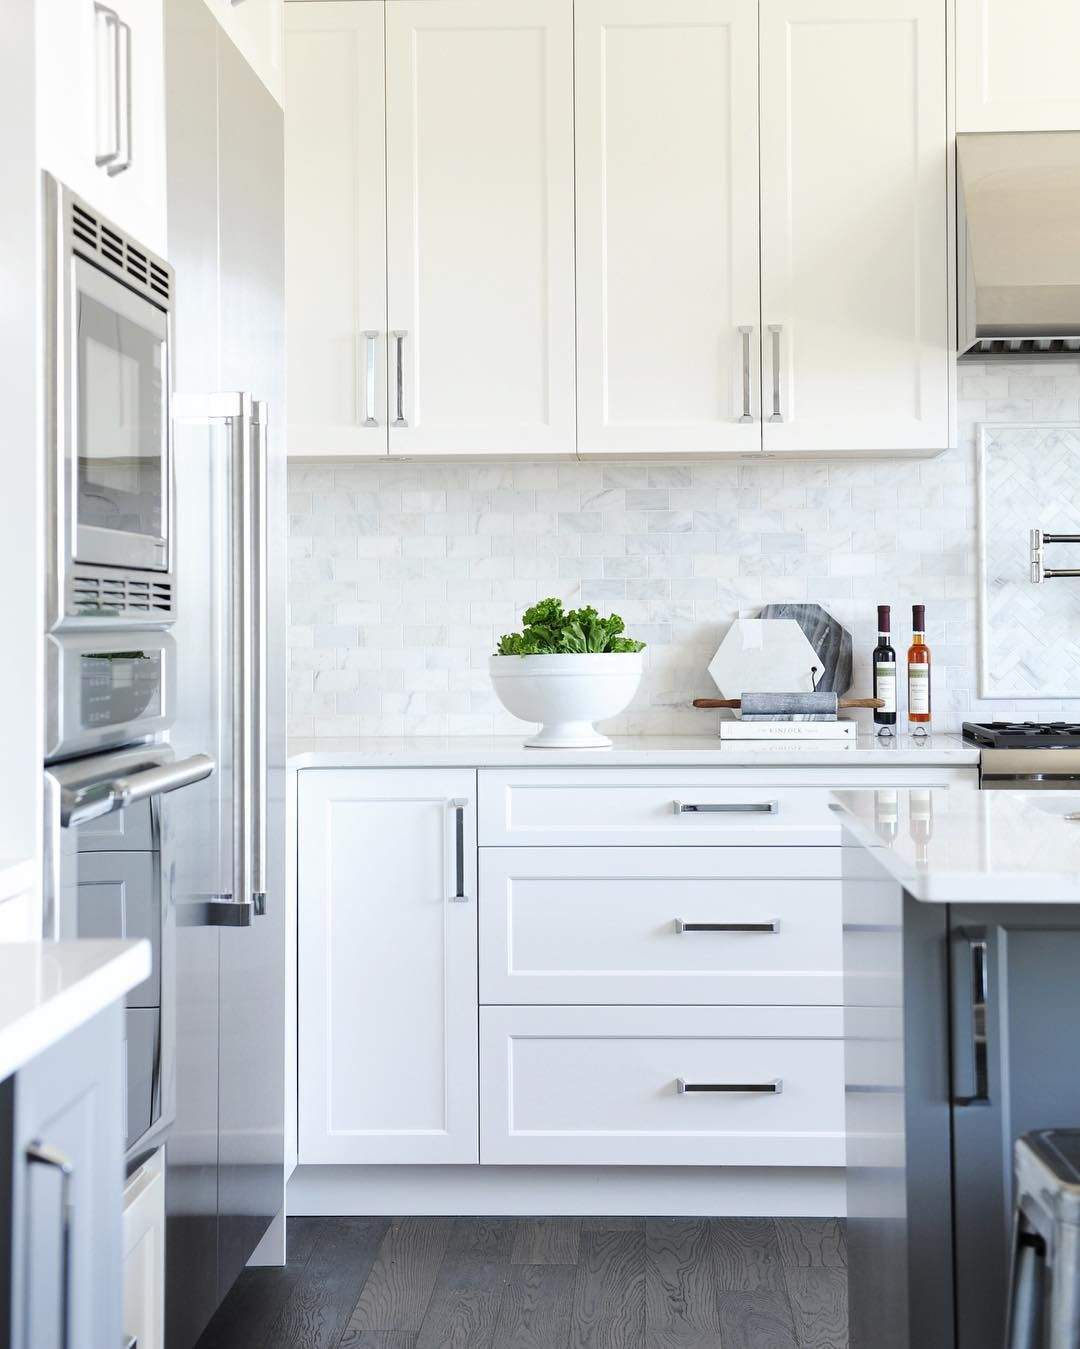 White Kitchen Cabinet Pulls
 Amanda Evans on Instagram “I love this kitchen White